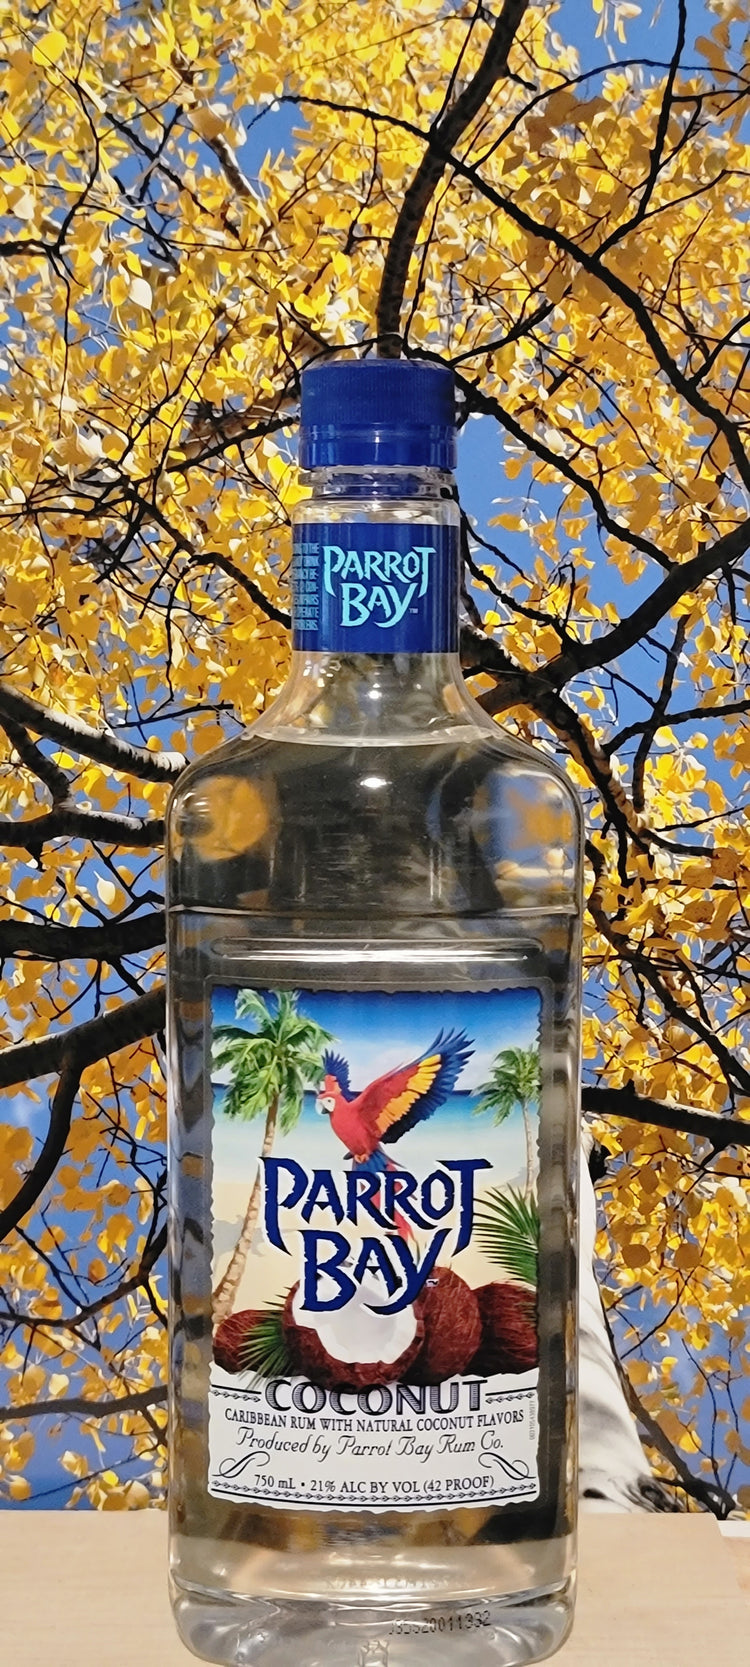 Parrot bay coconut rum